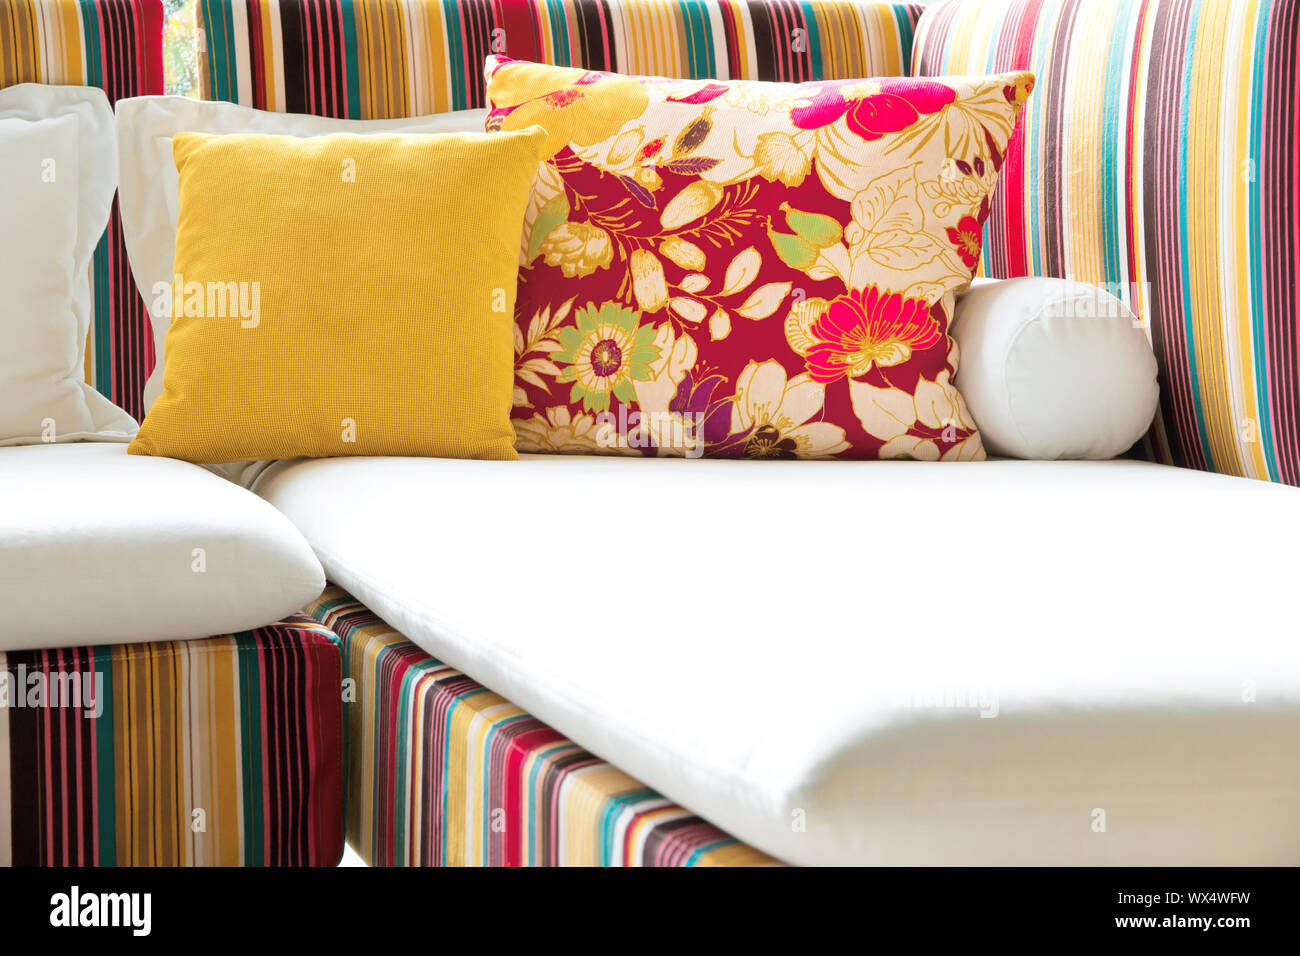 colorful cushions on sofa